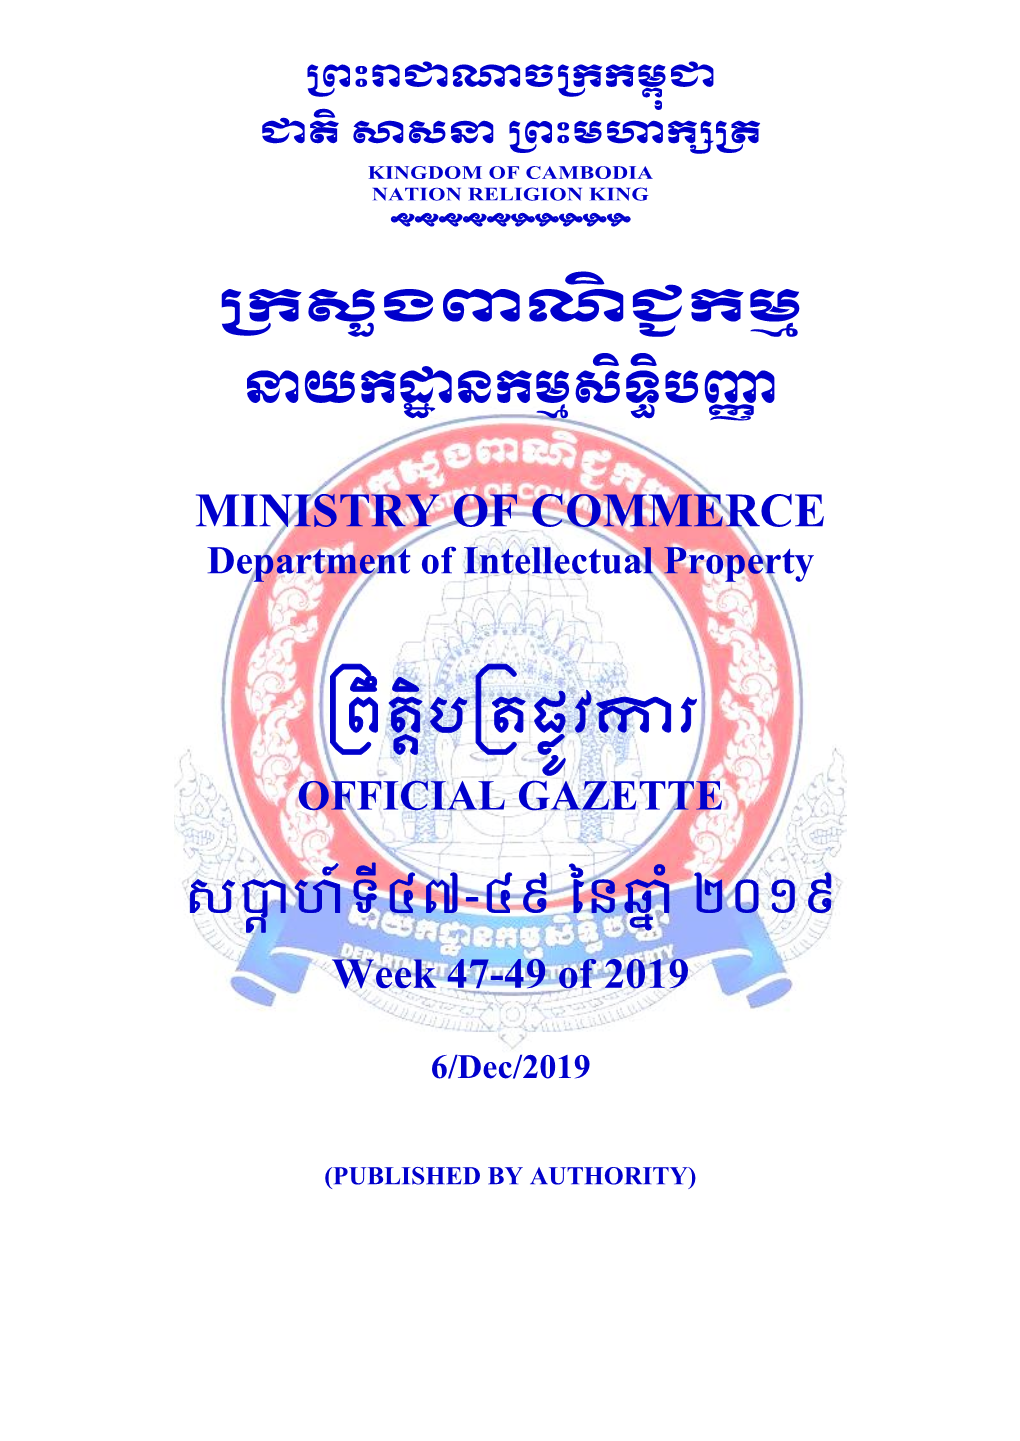 Khon, 74110 , Thailand 5- Thailand 6- KIMLY IP SERVICE 7- Borey Piphup Thmey, Somrong Andeth No